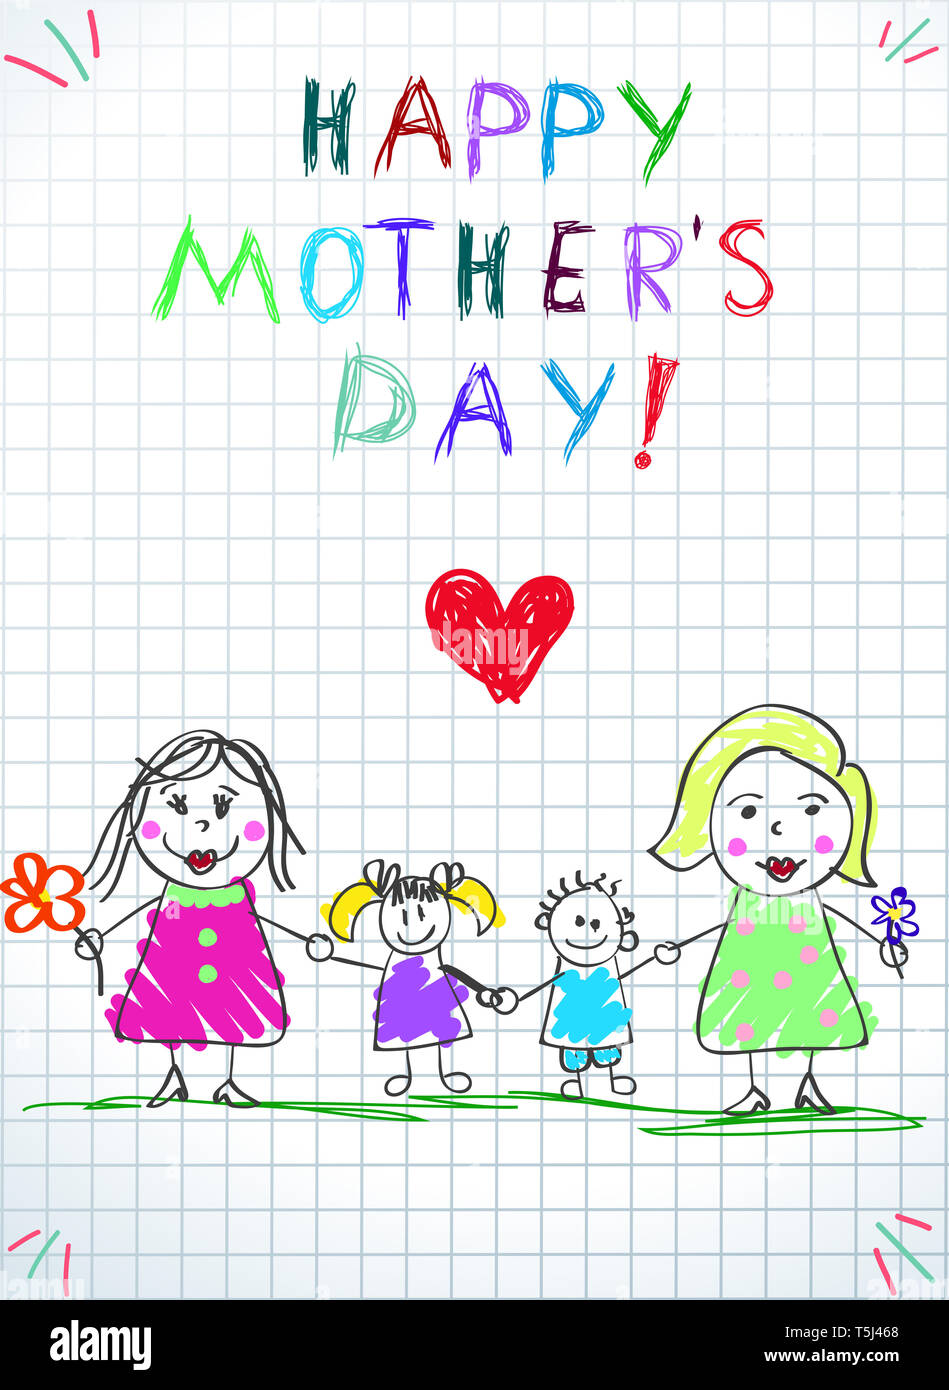 Lgbt-Familie. Glückliche Mütter Tag Kinder Zeichnung. Zwei Frauen mit Annahme durch die Mädchen und Jungen auf grünem Gras auf kariertem Papier Hintergrund stehen. Baby Congratulati Stockfoto